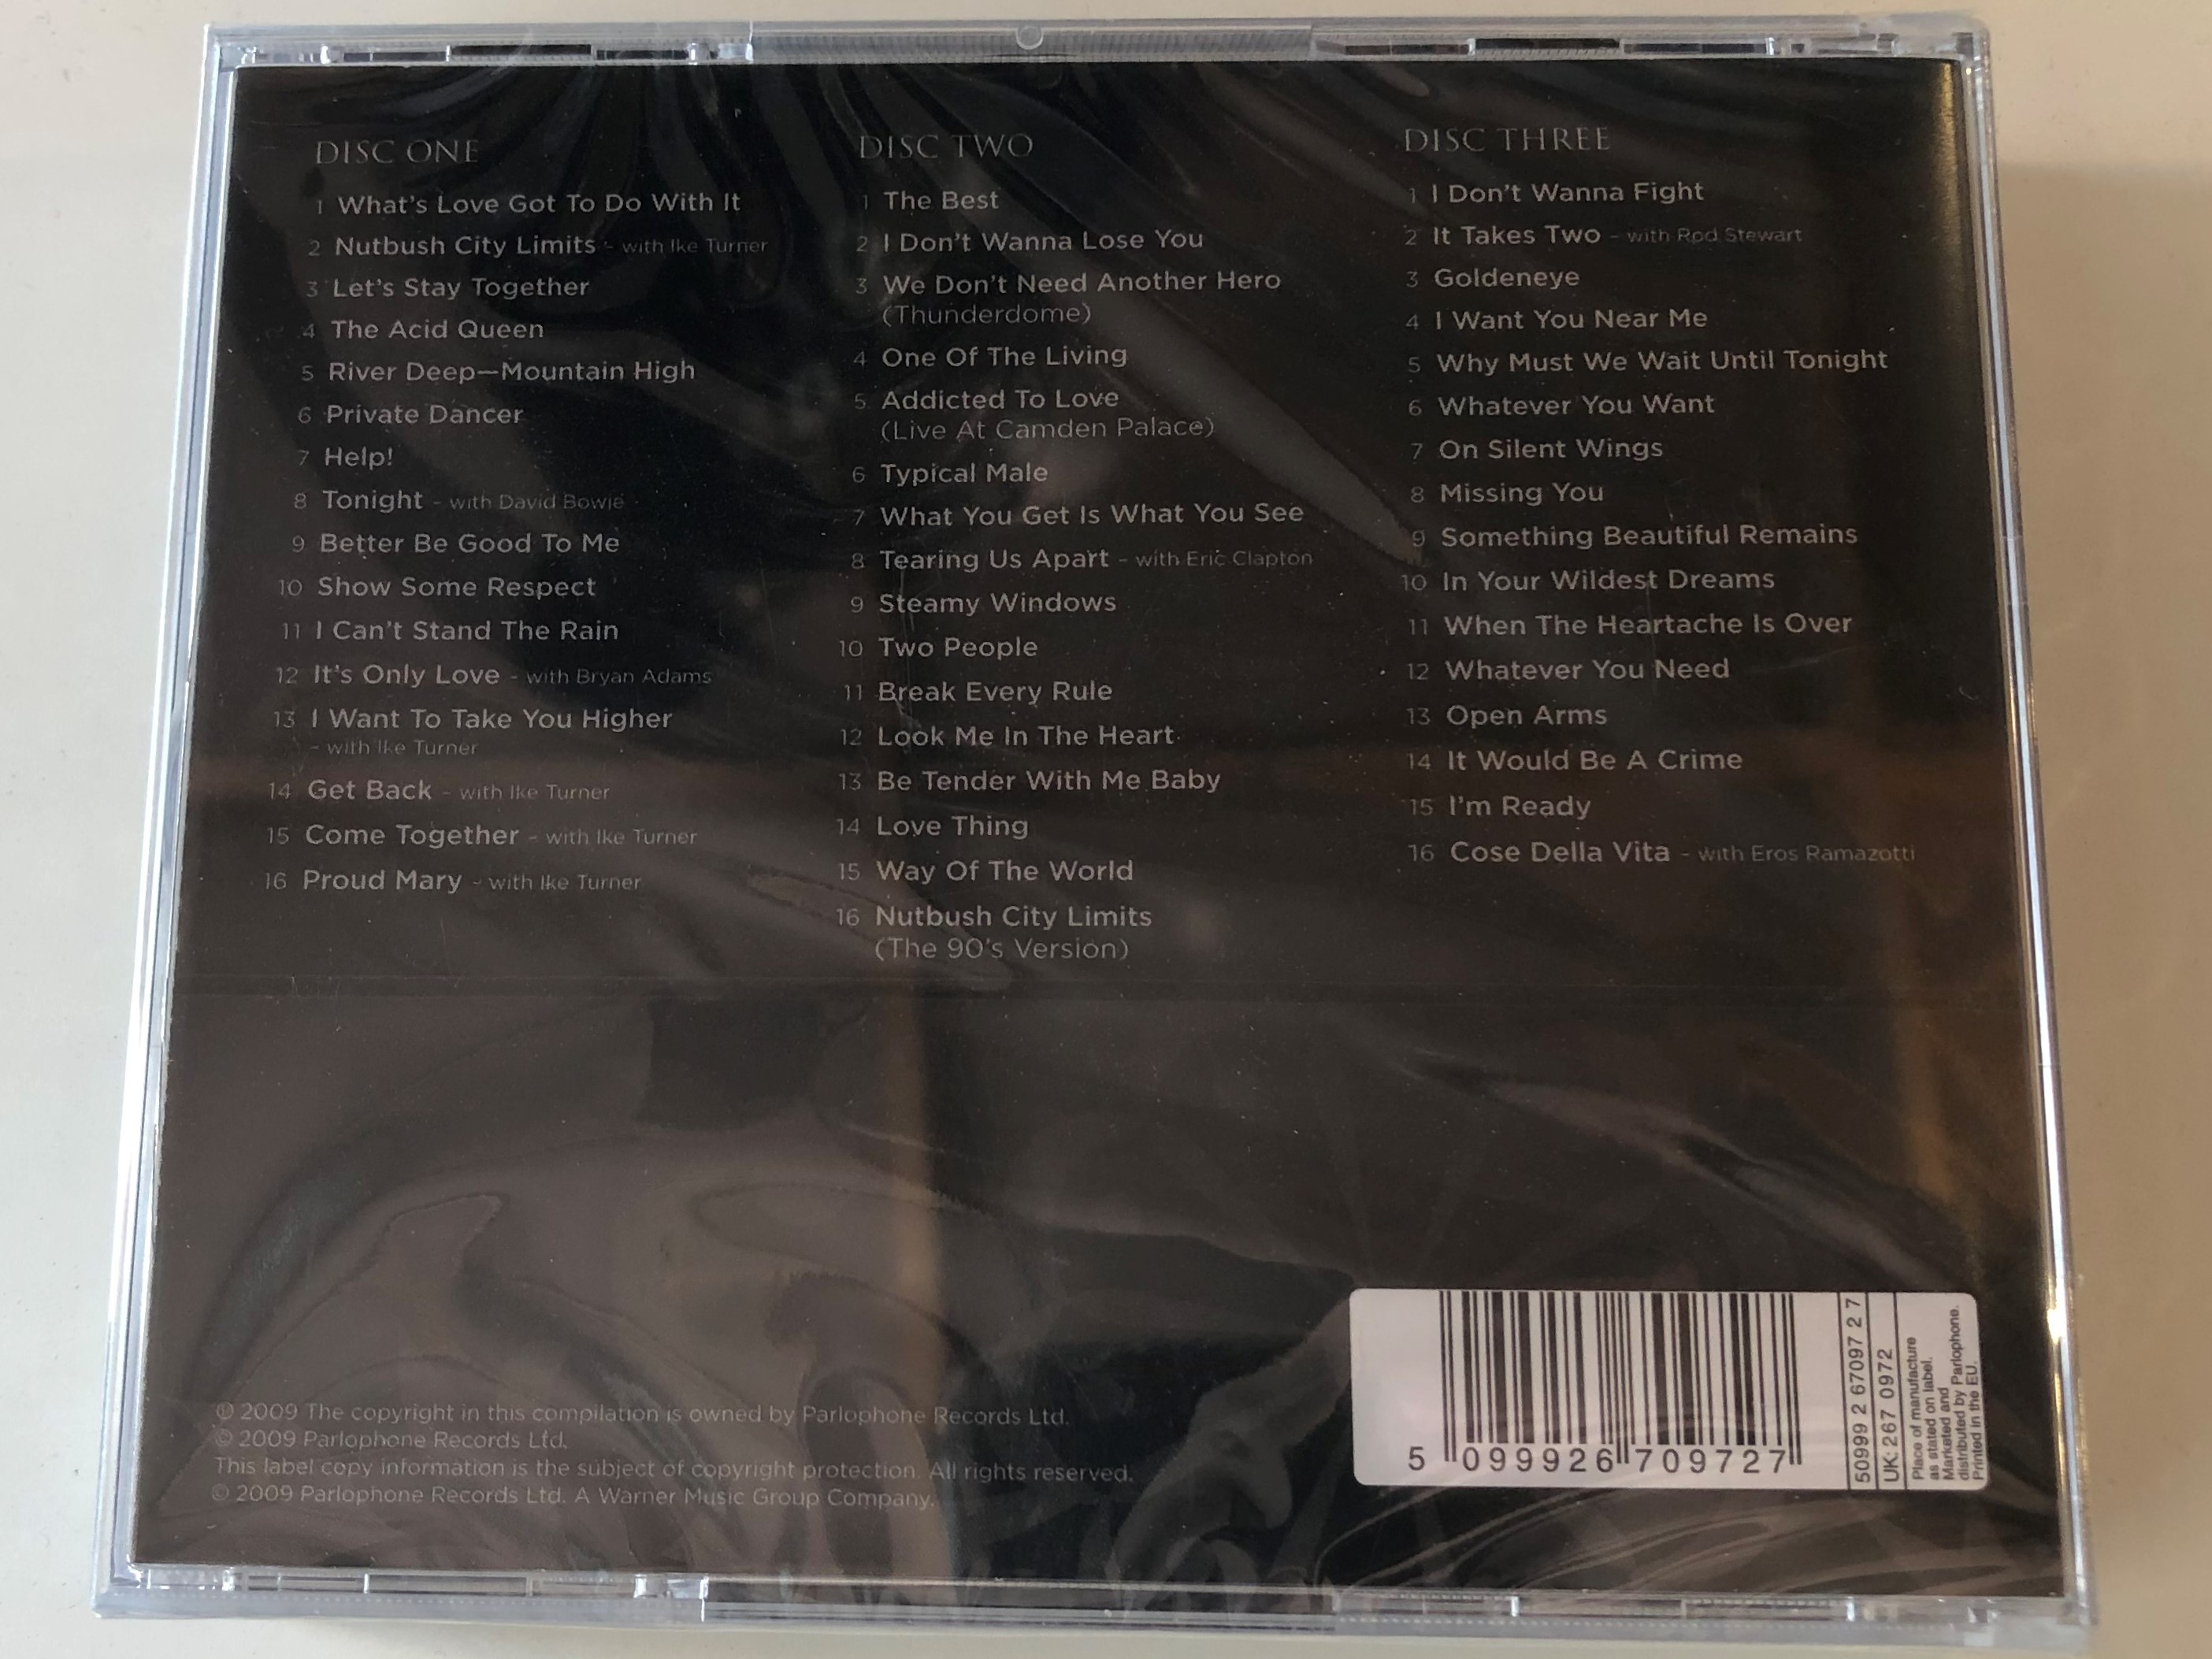 tina-the-platinum-collection-parlophone-3x-audio-cd-2009-5099926709727-2-.jpg